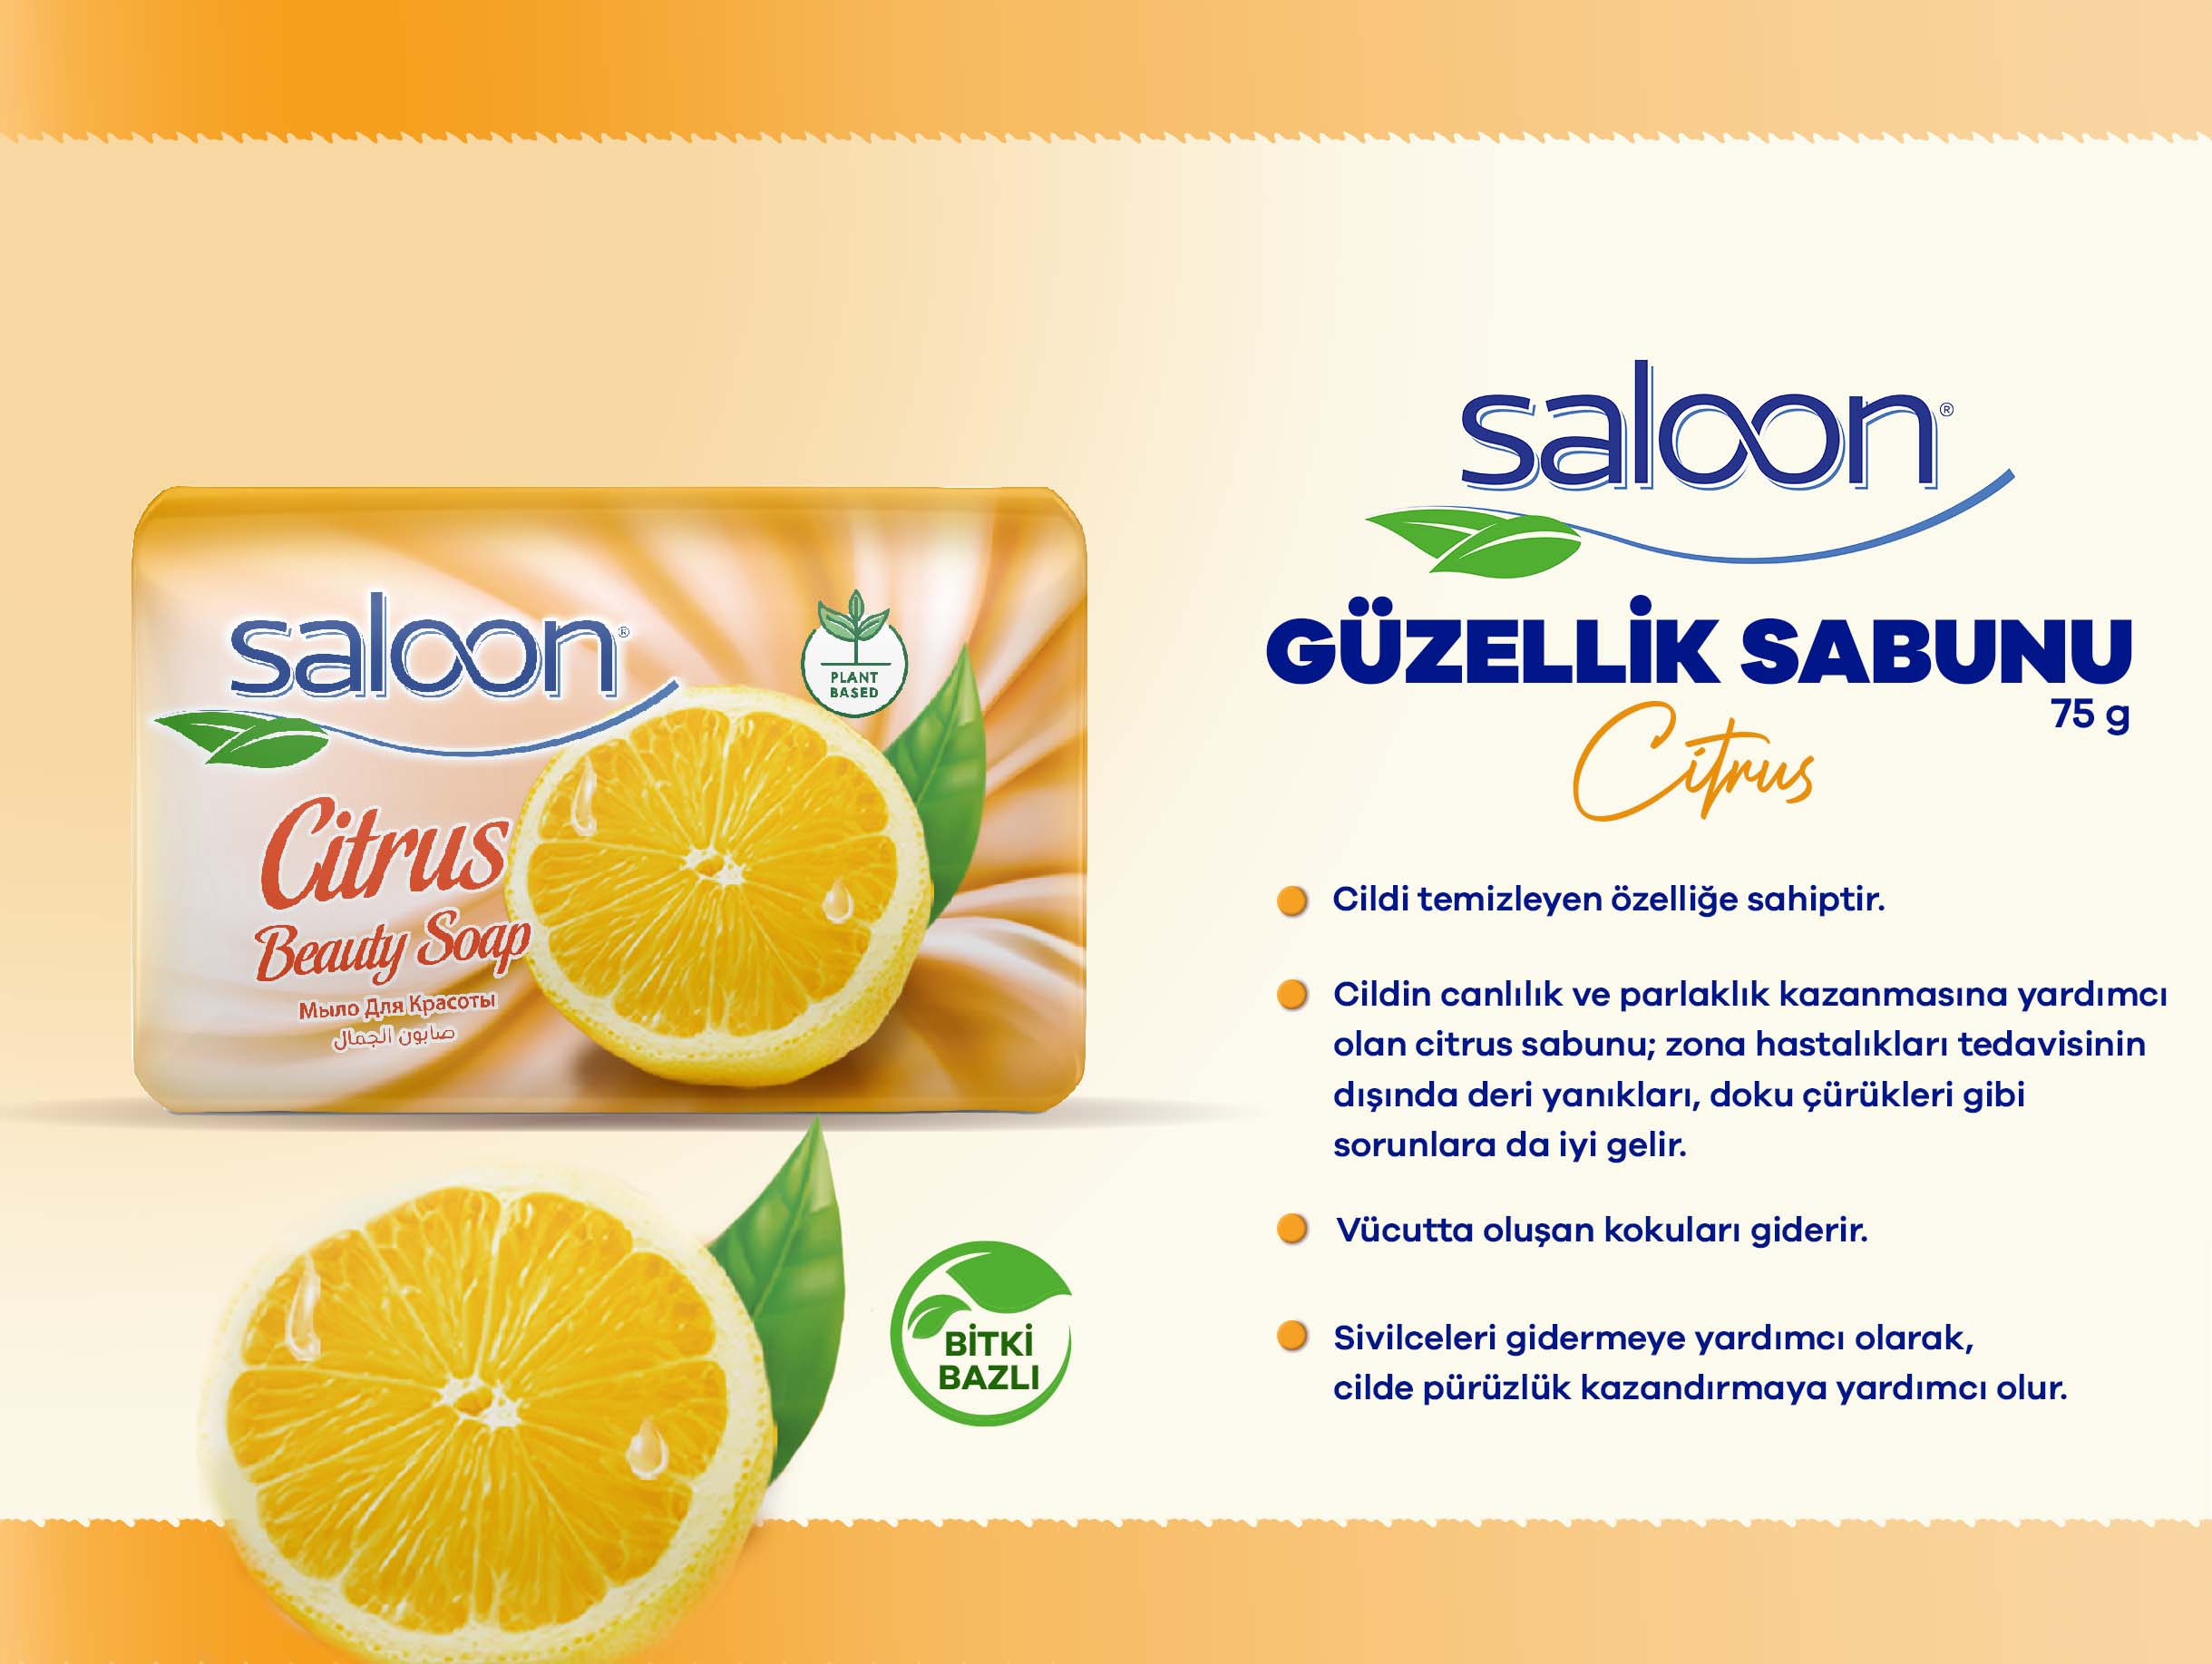 Saloon Güzellik Sabunu Citrus _.jpg (227 KB)